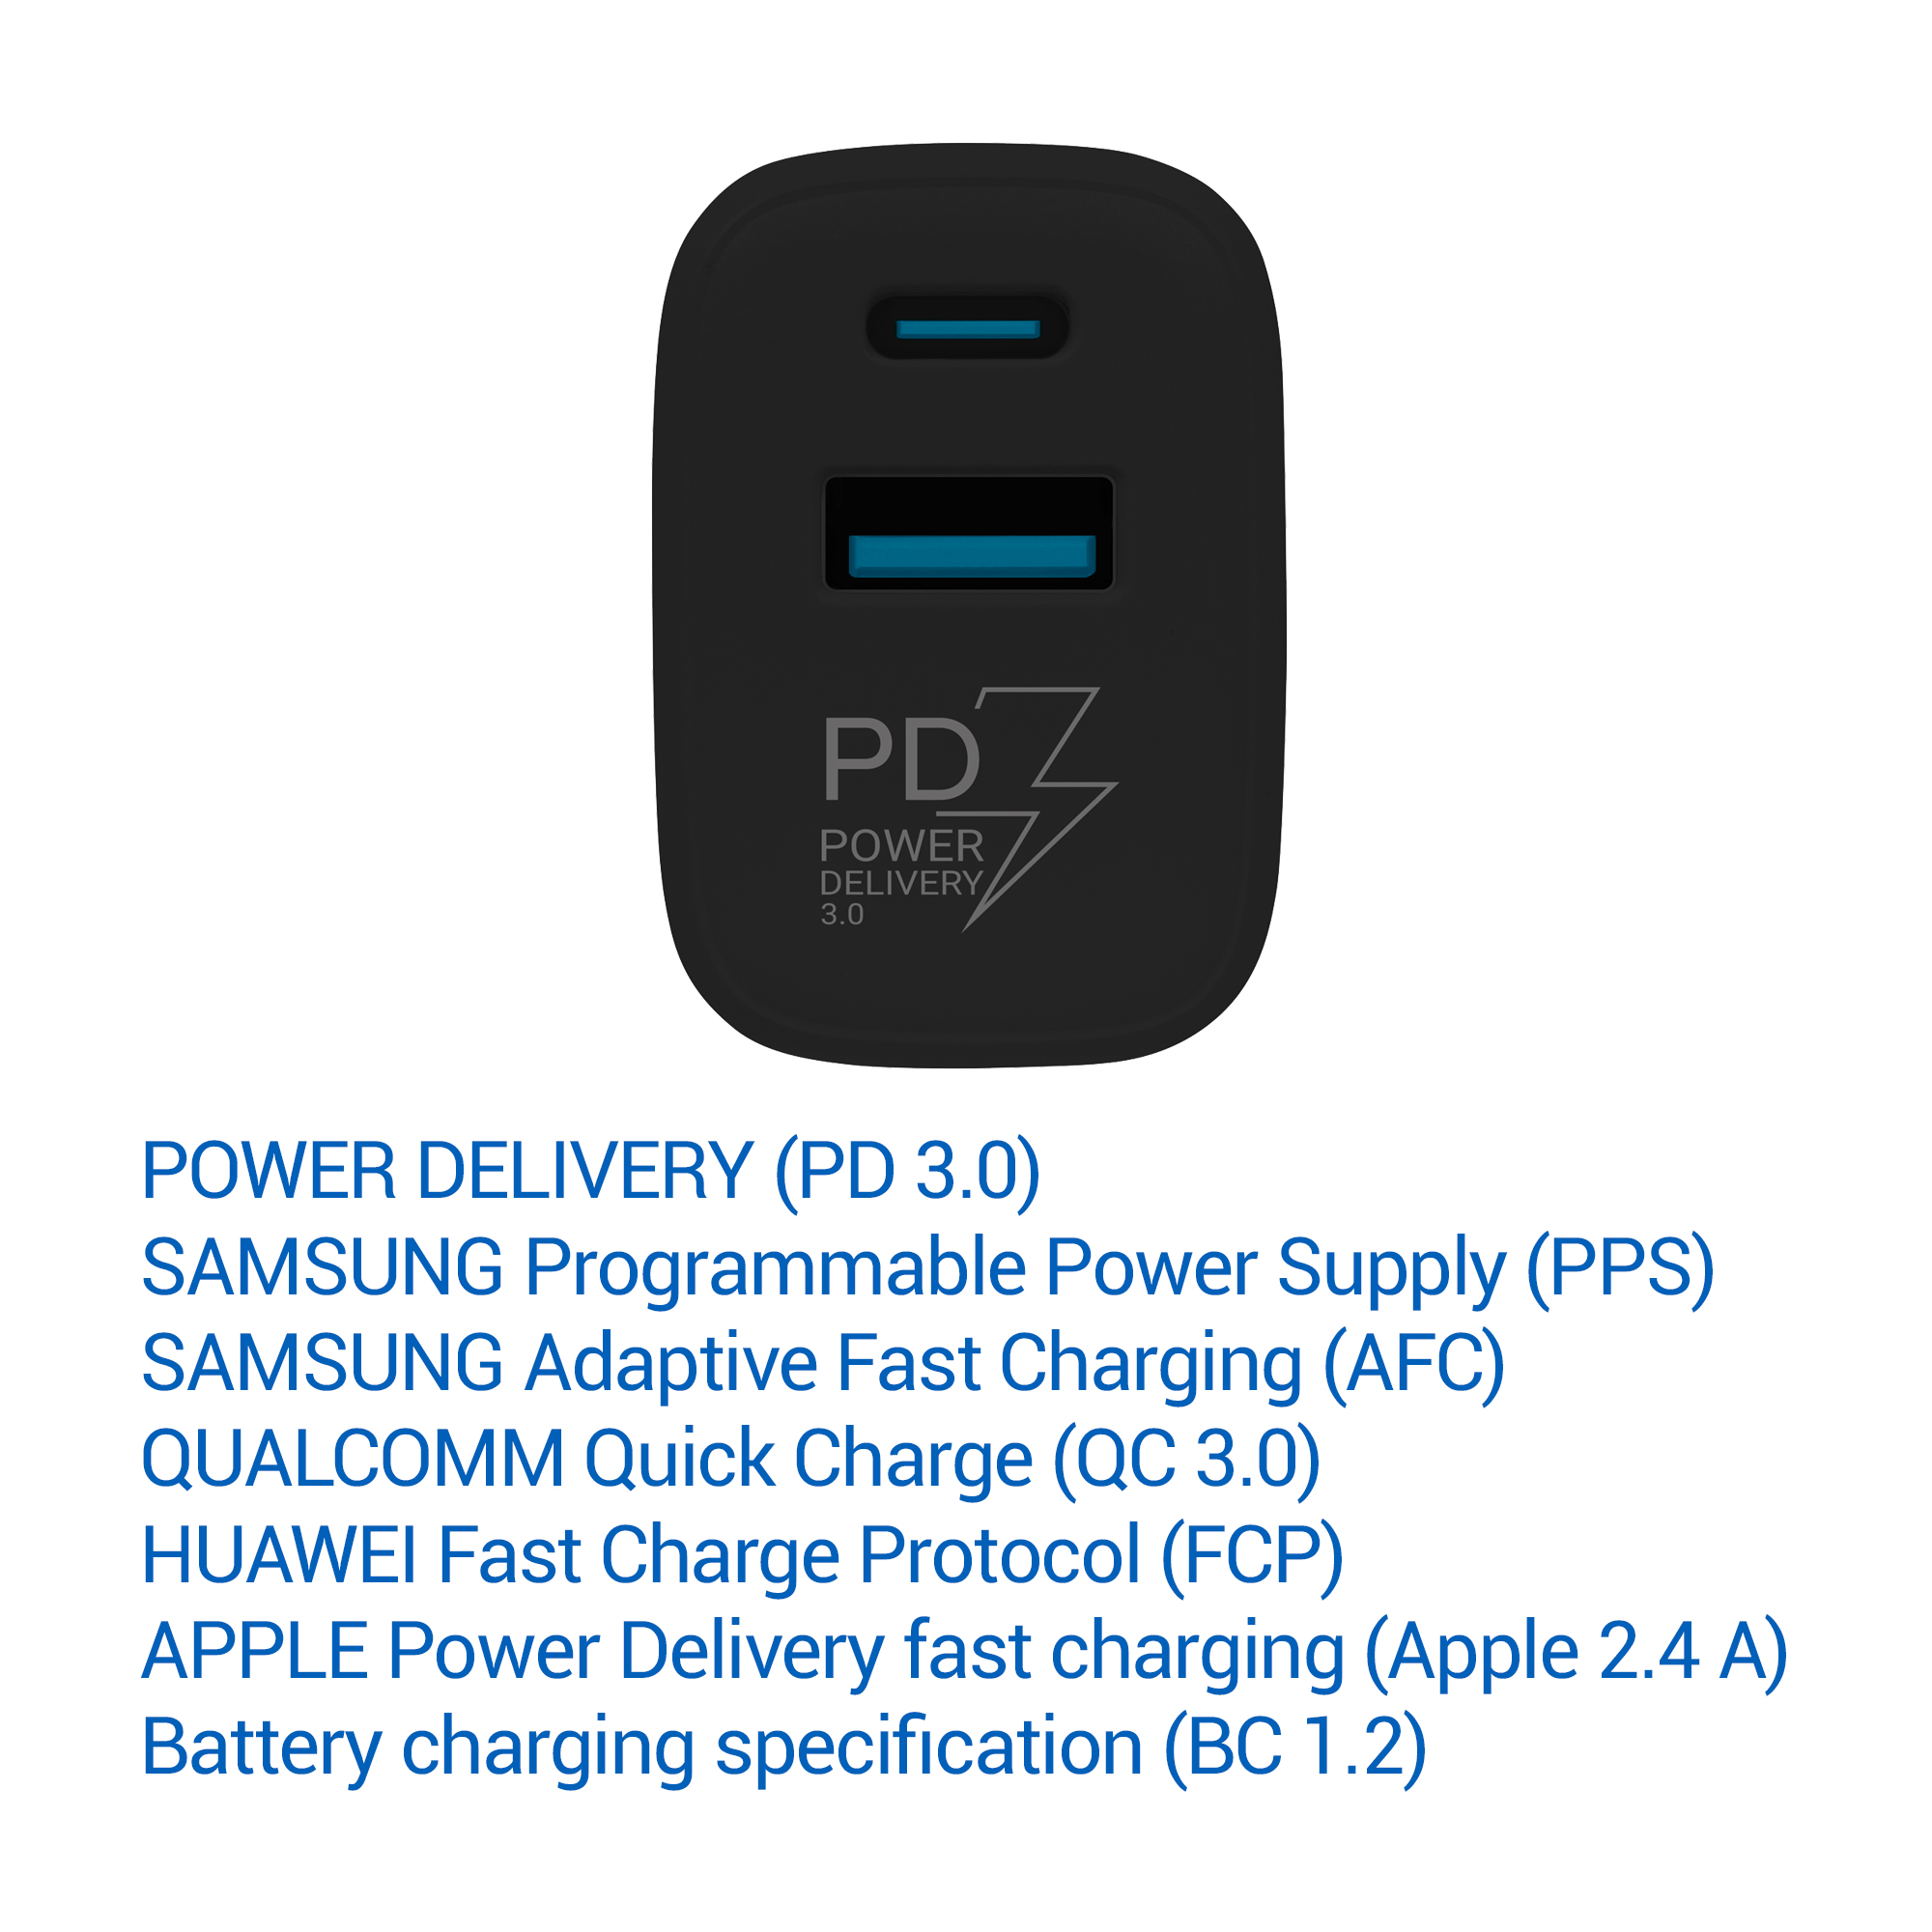 Obrázek TESLA Power Charger T220 25W PD 3.0/PPS (černá)